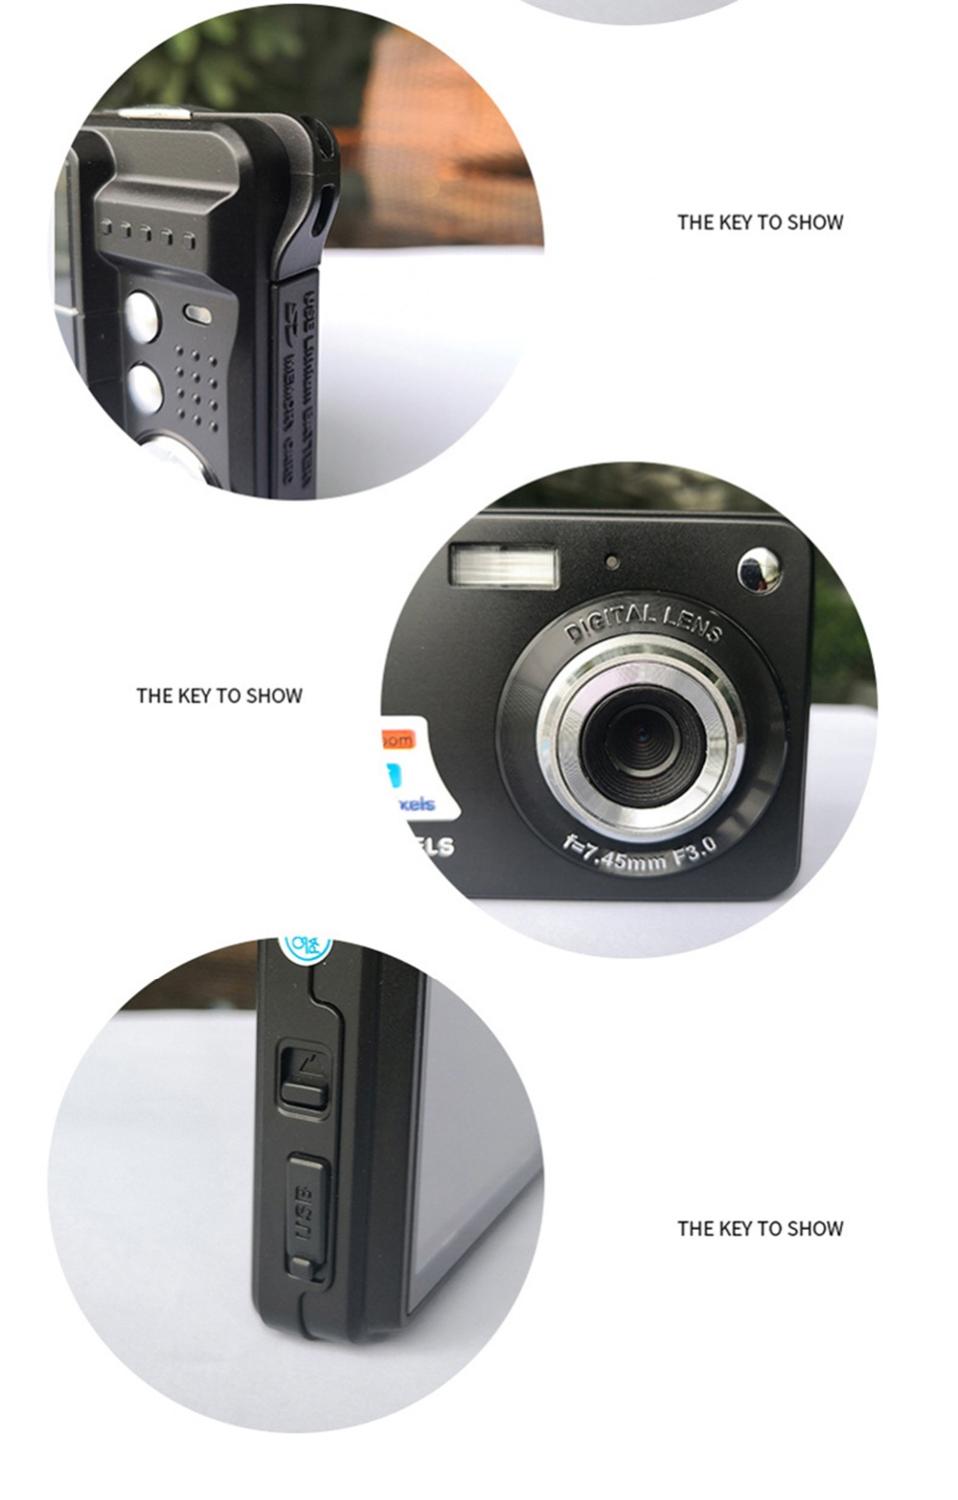 18MP 720P Kinderen Mini Digitale Camera 8X Zoom 2.7 "" Tft Lcd-scherm Anti-Shake Video Camcorder foto Camera Voor Kinderen